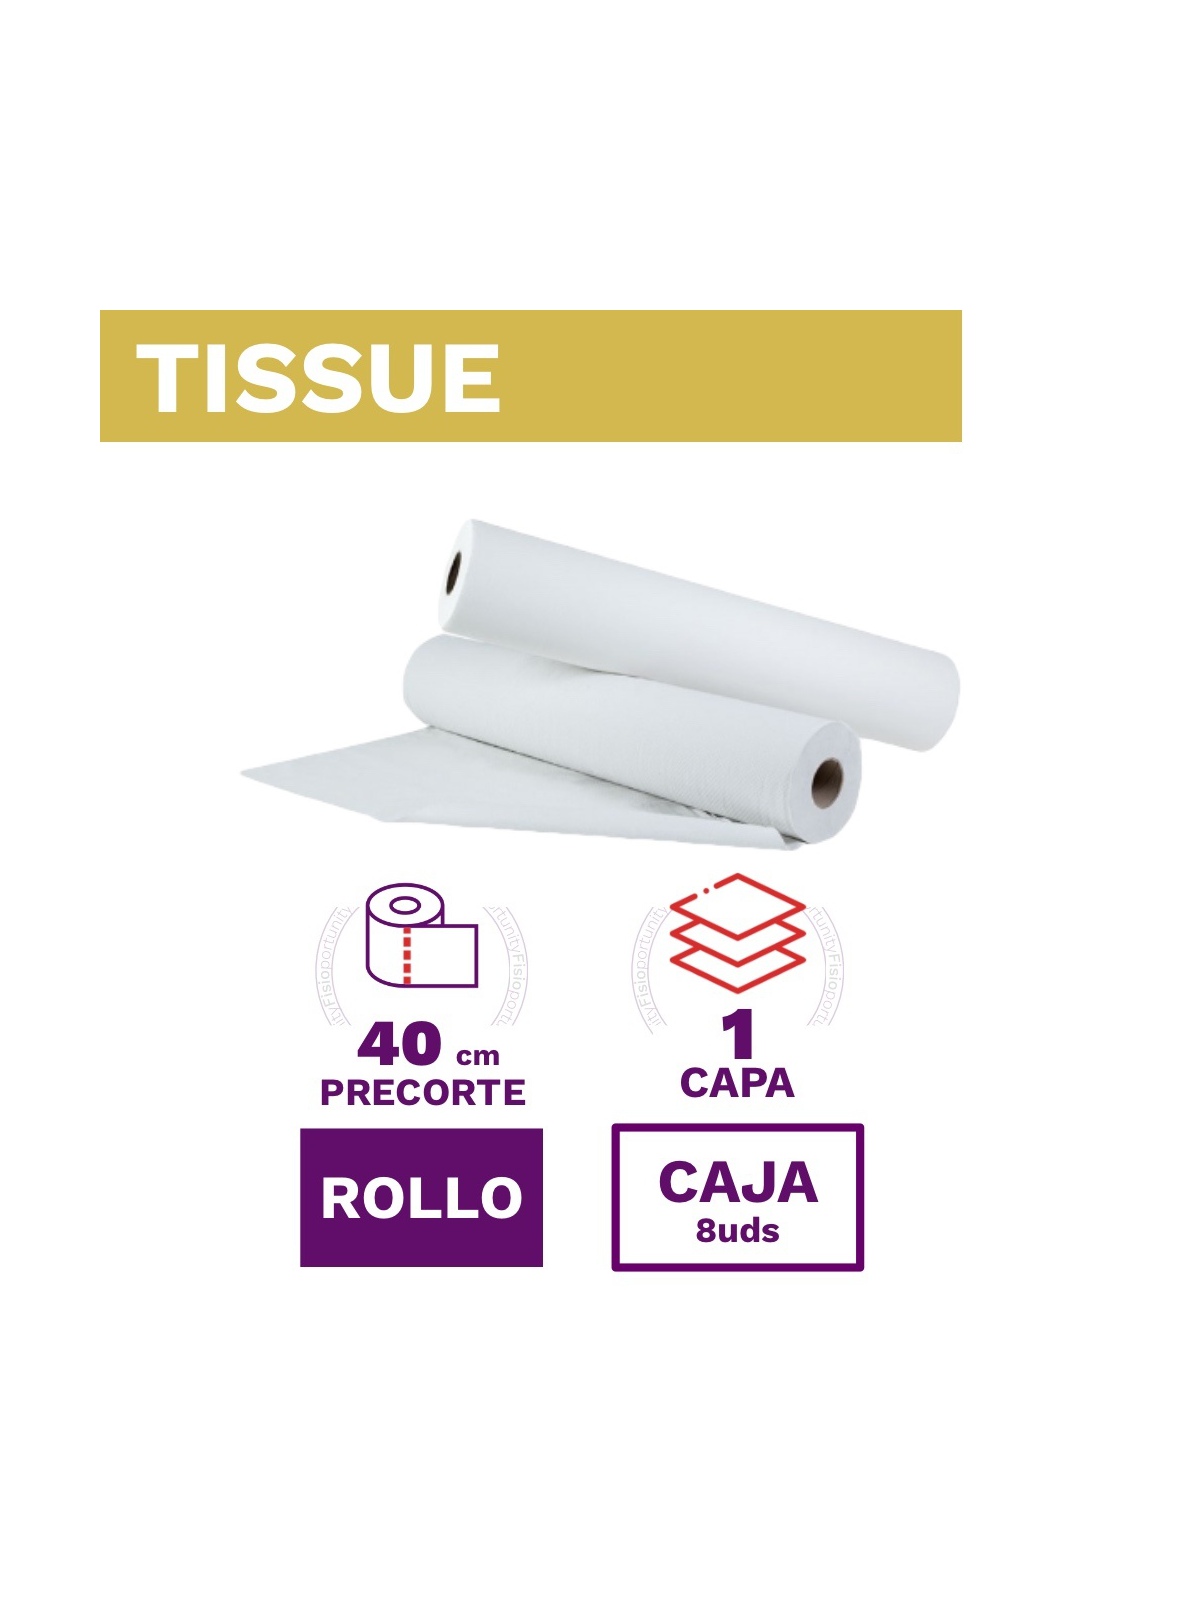 Papel Camilla Tissue 1 capa 100% Celulosa- Precorte 40cms